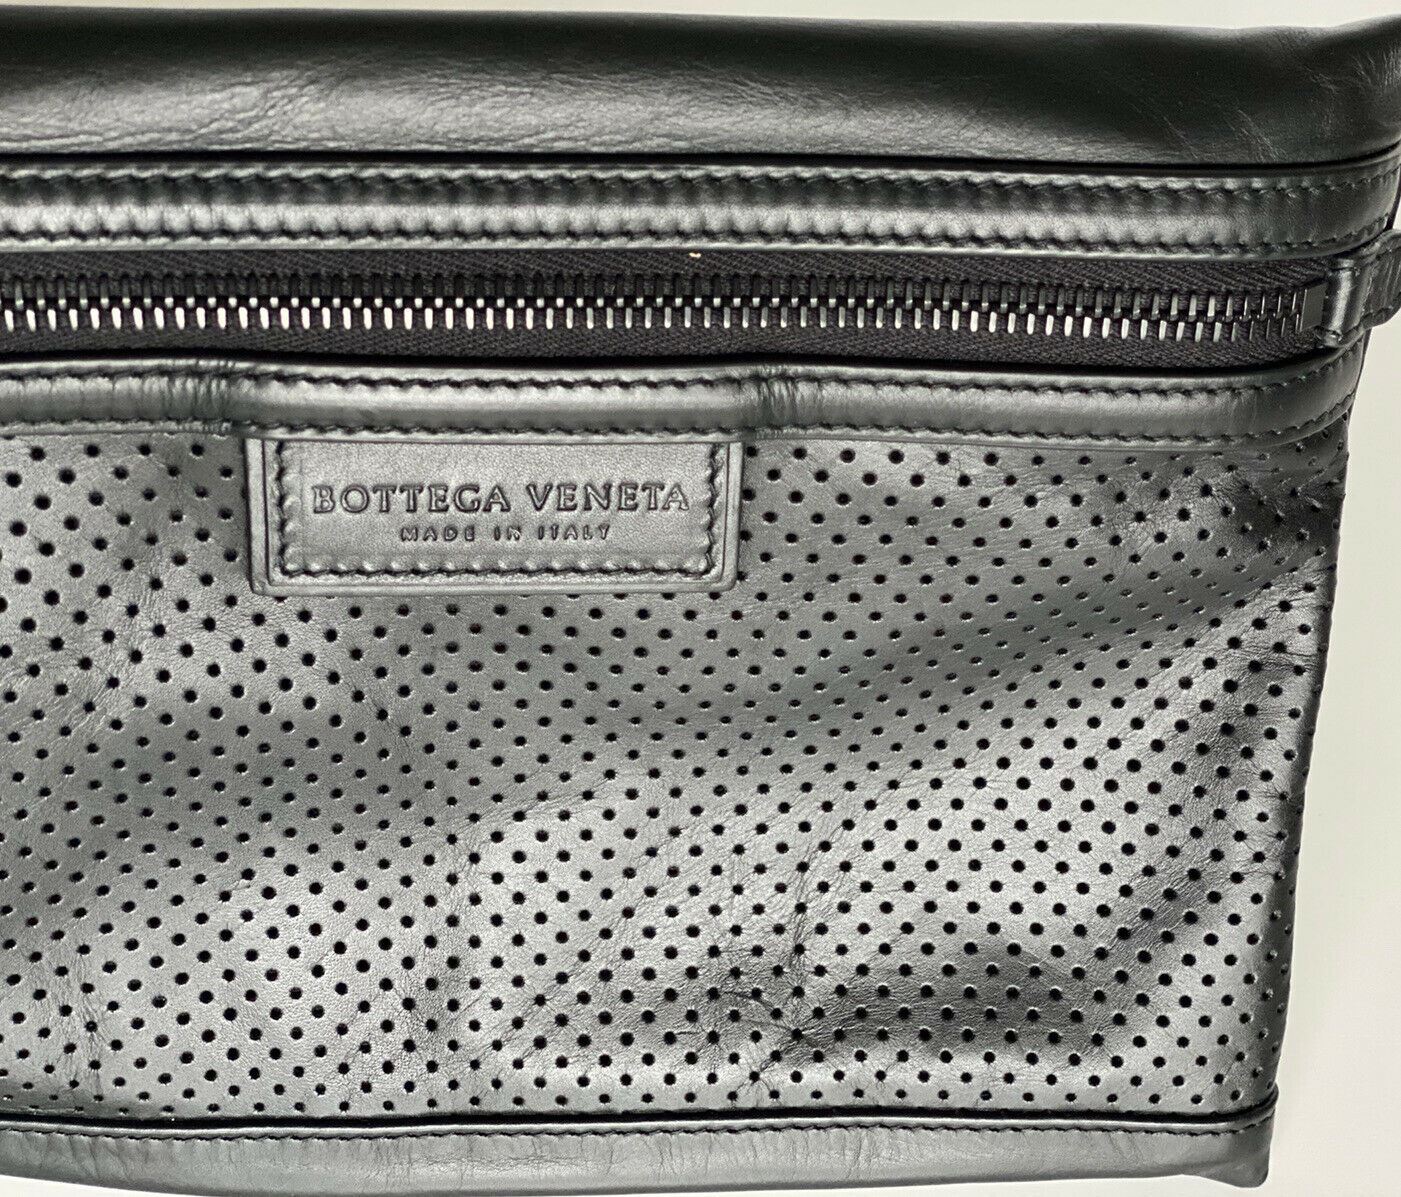 NWT $670 Черный кошелек Bottega Veneta Leggero на ремешке из перфорированной кожи 566199